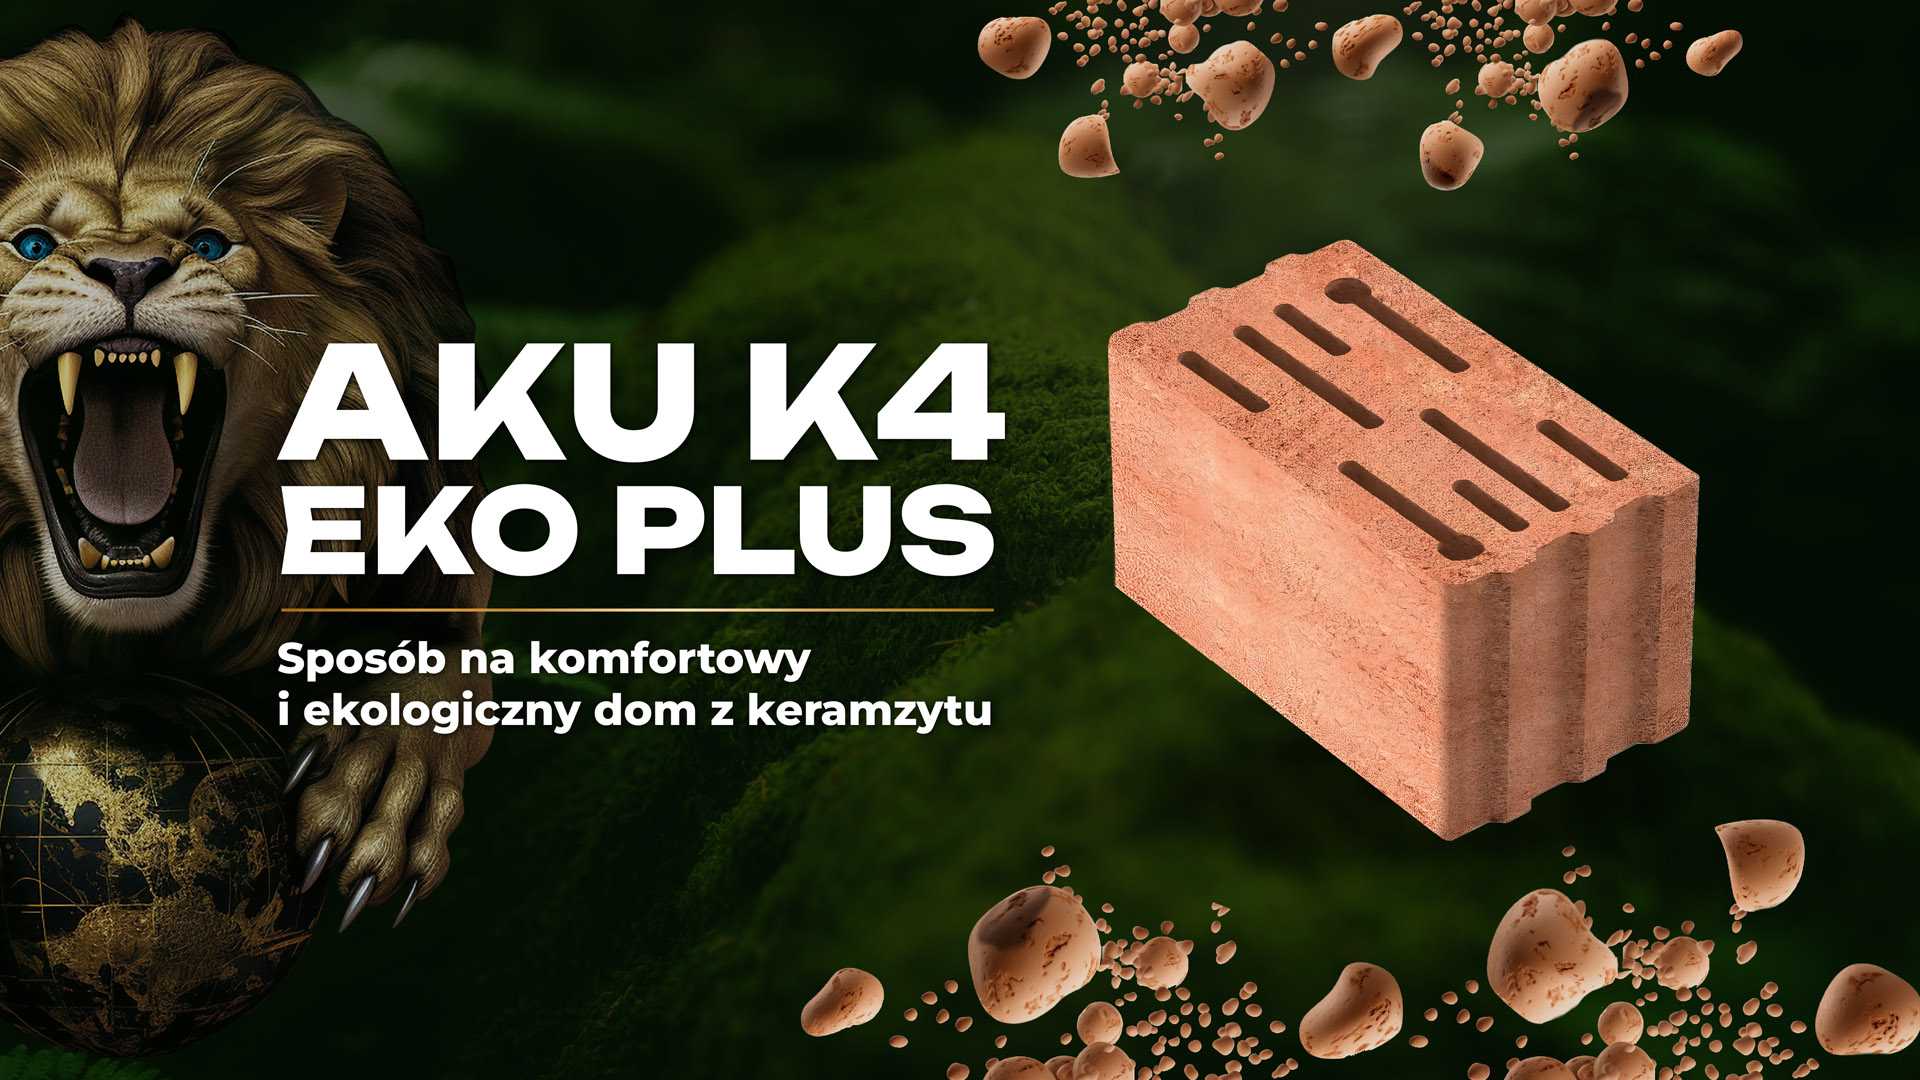 AKU K4 Eko Plus – sposób na komfortowy i ekologiczny dom z keramzytu